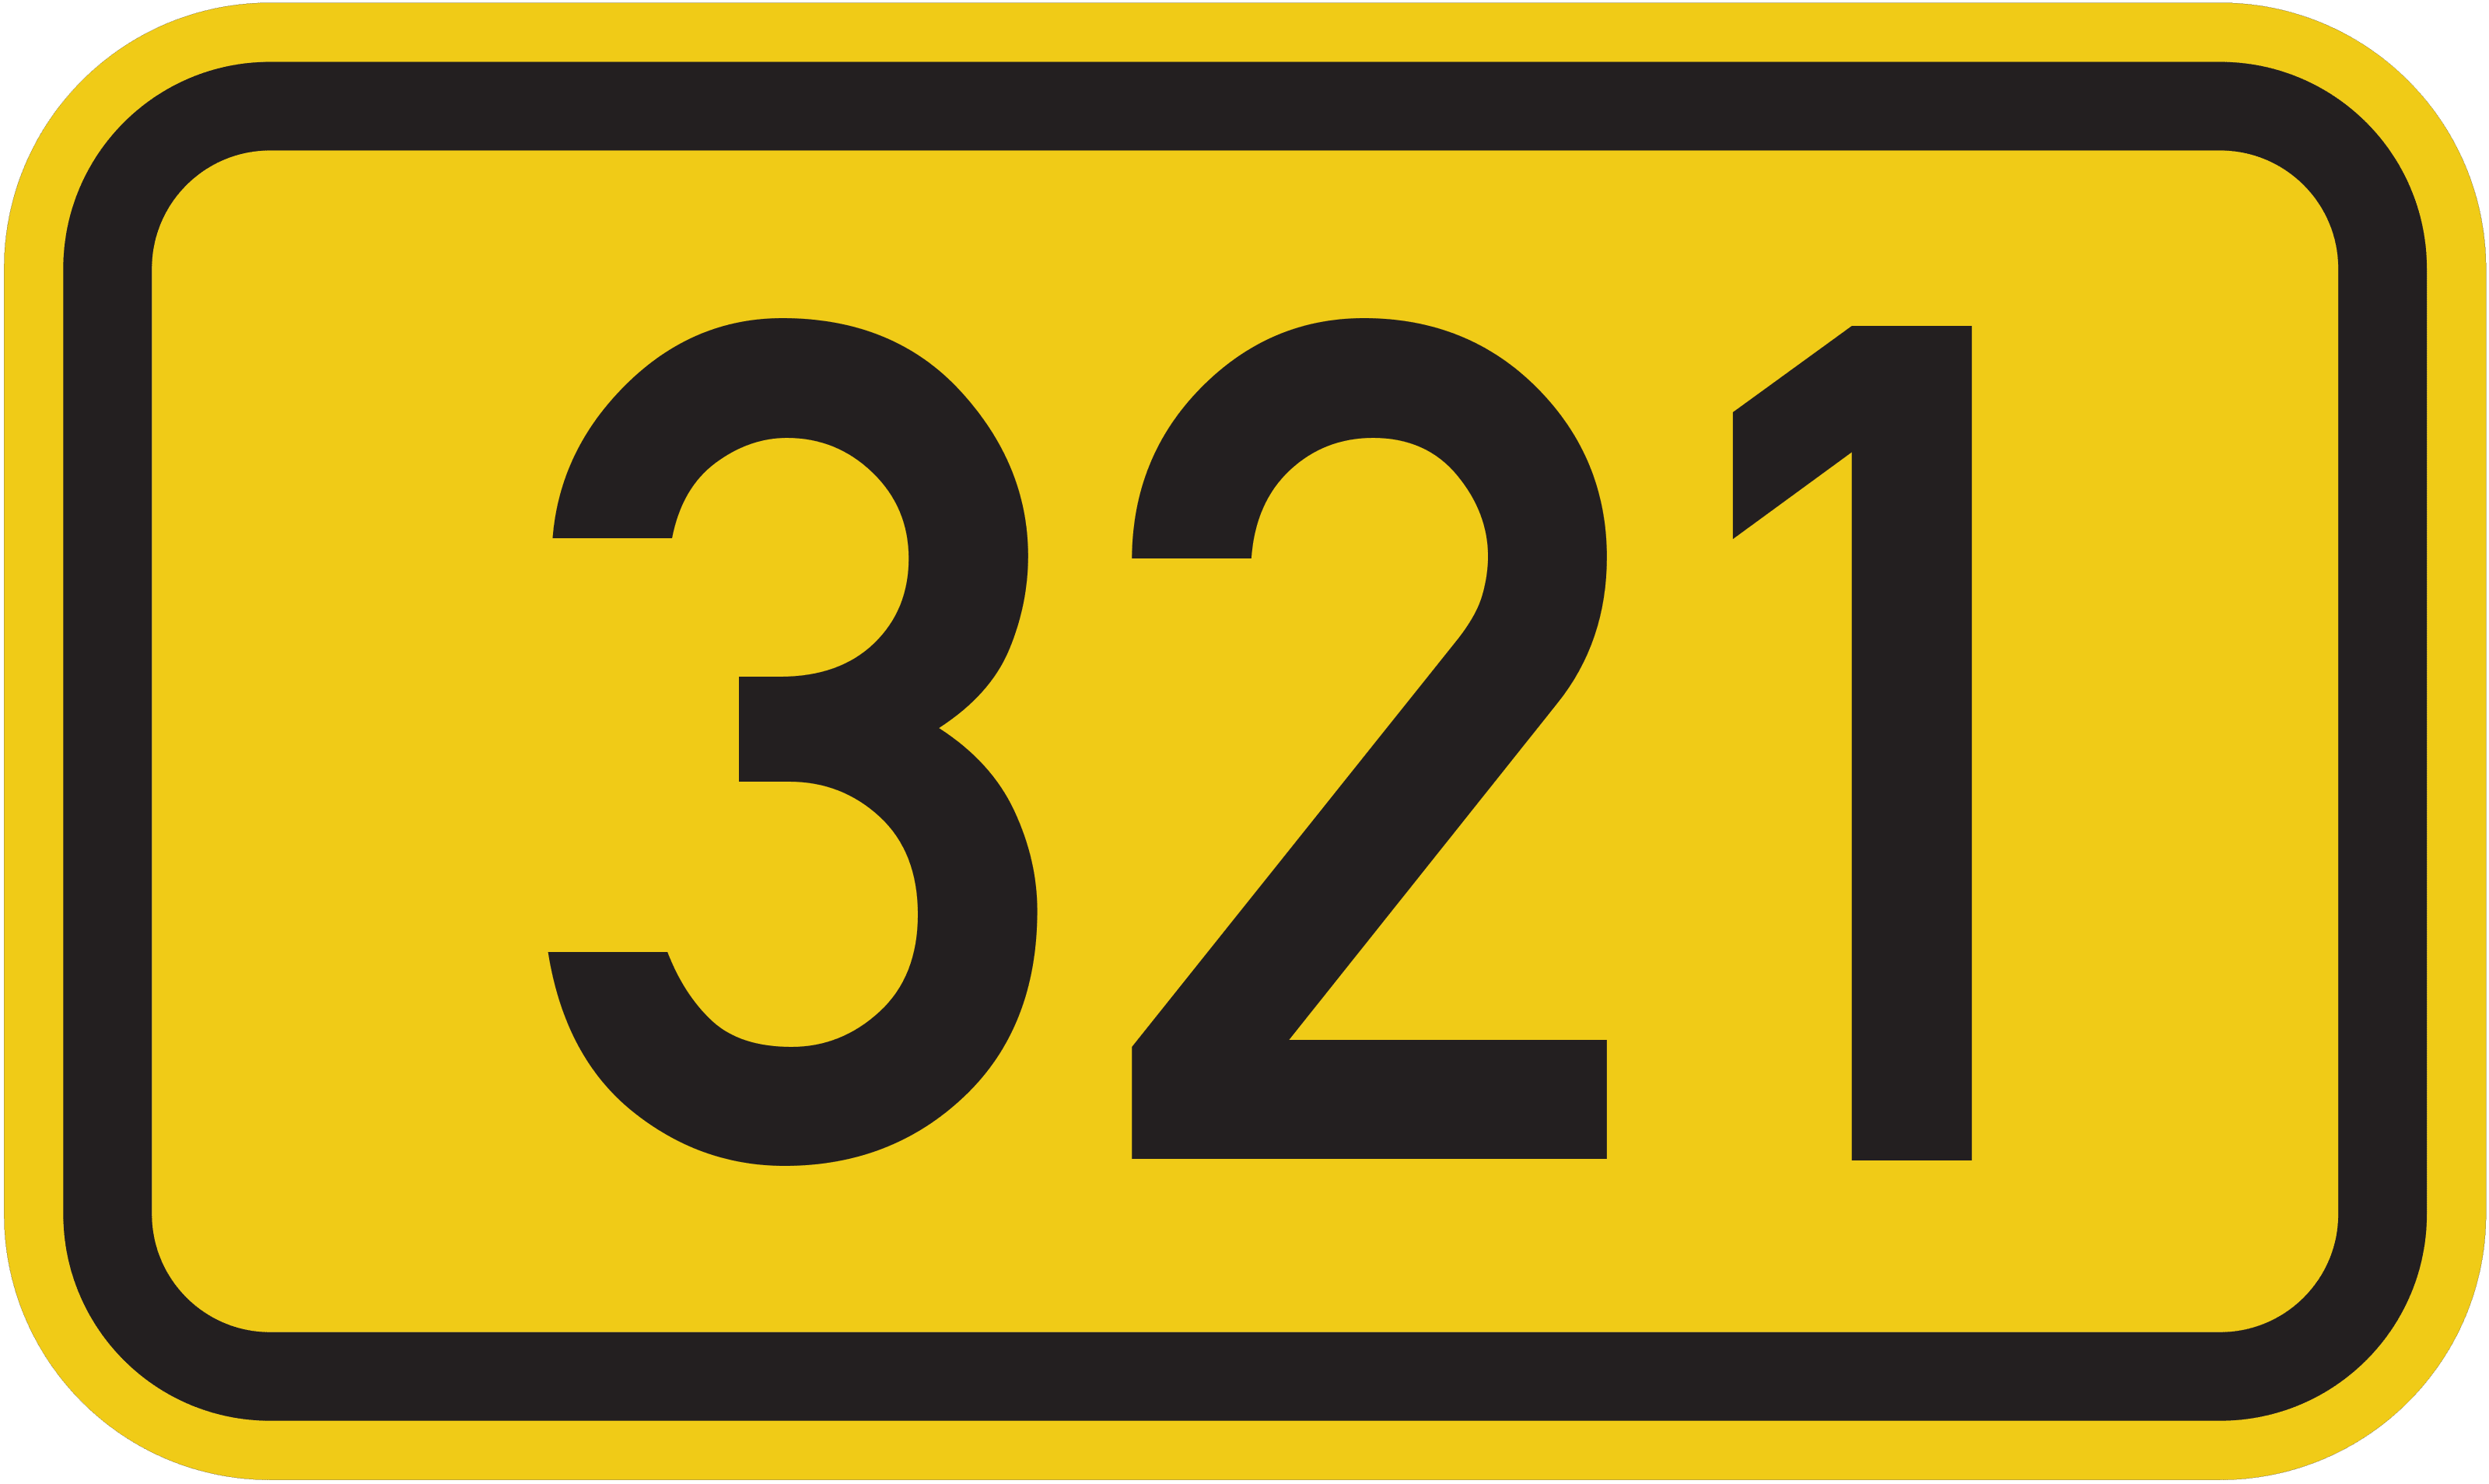 Bundesstraße B 321